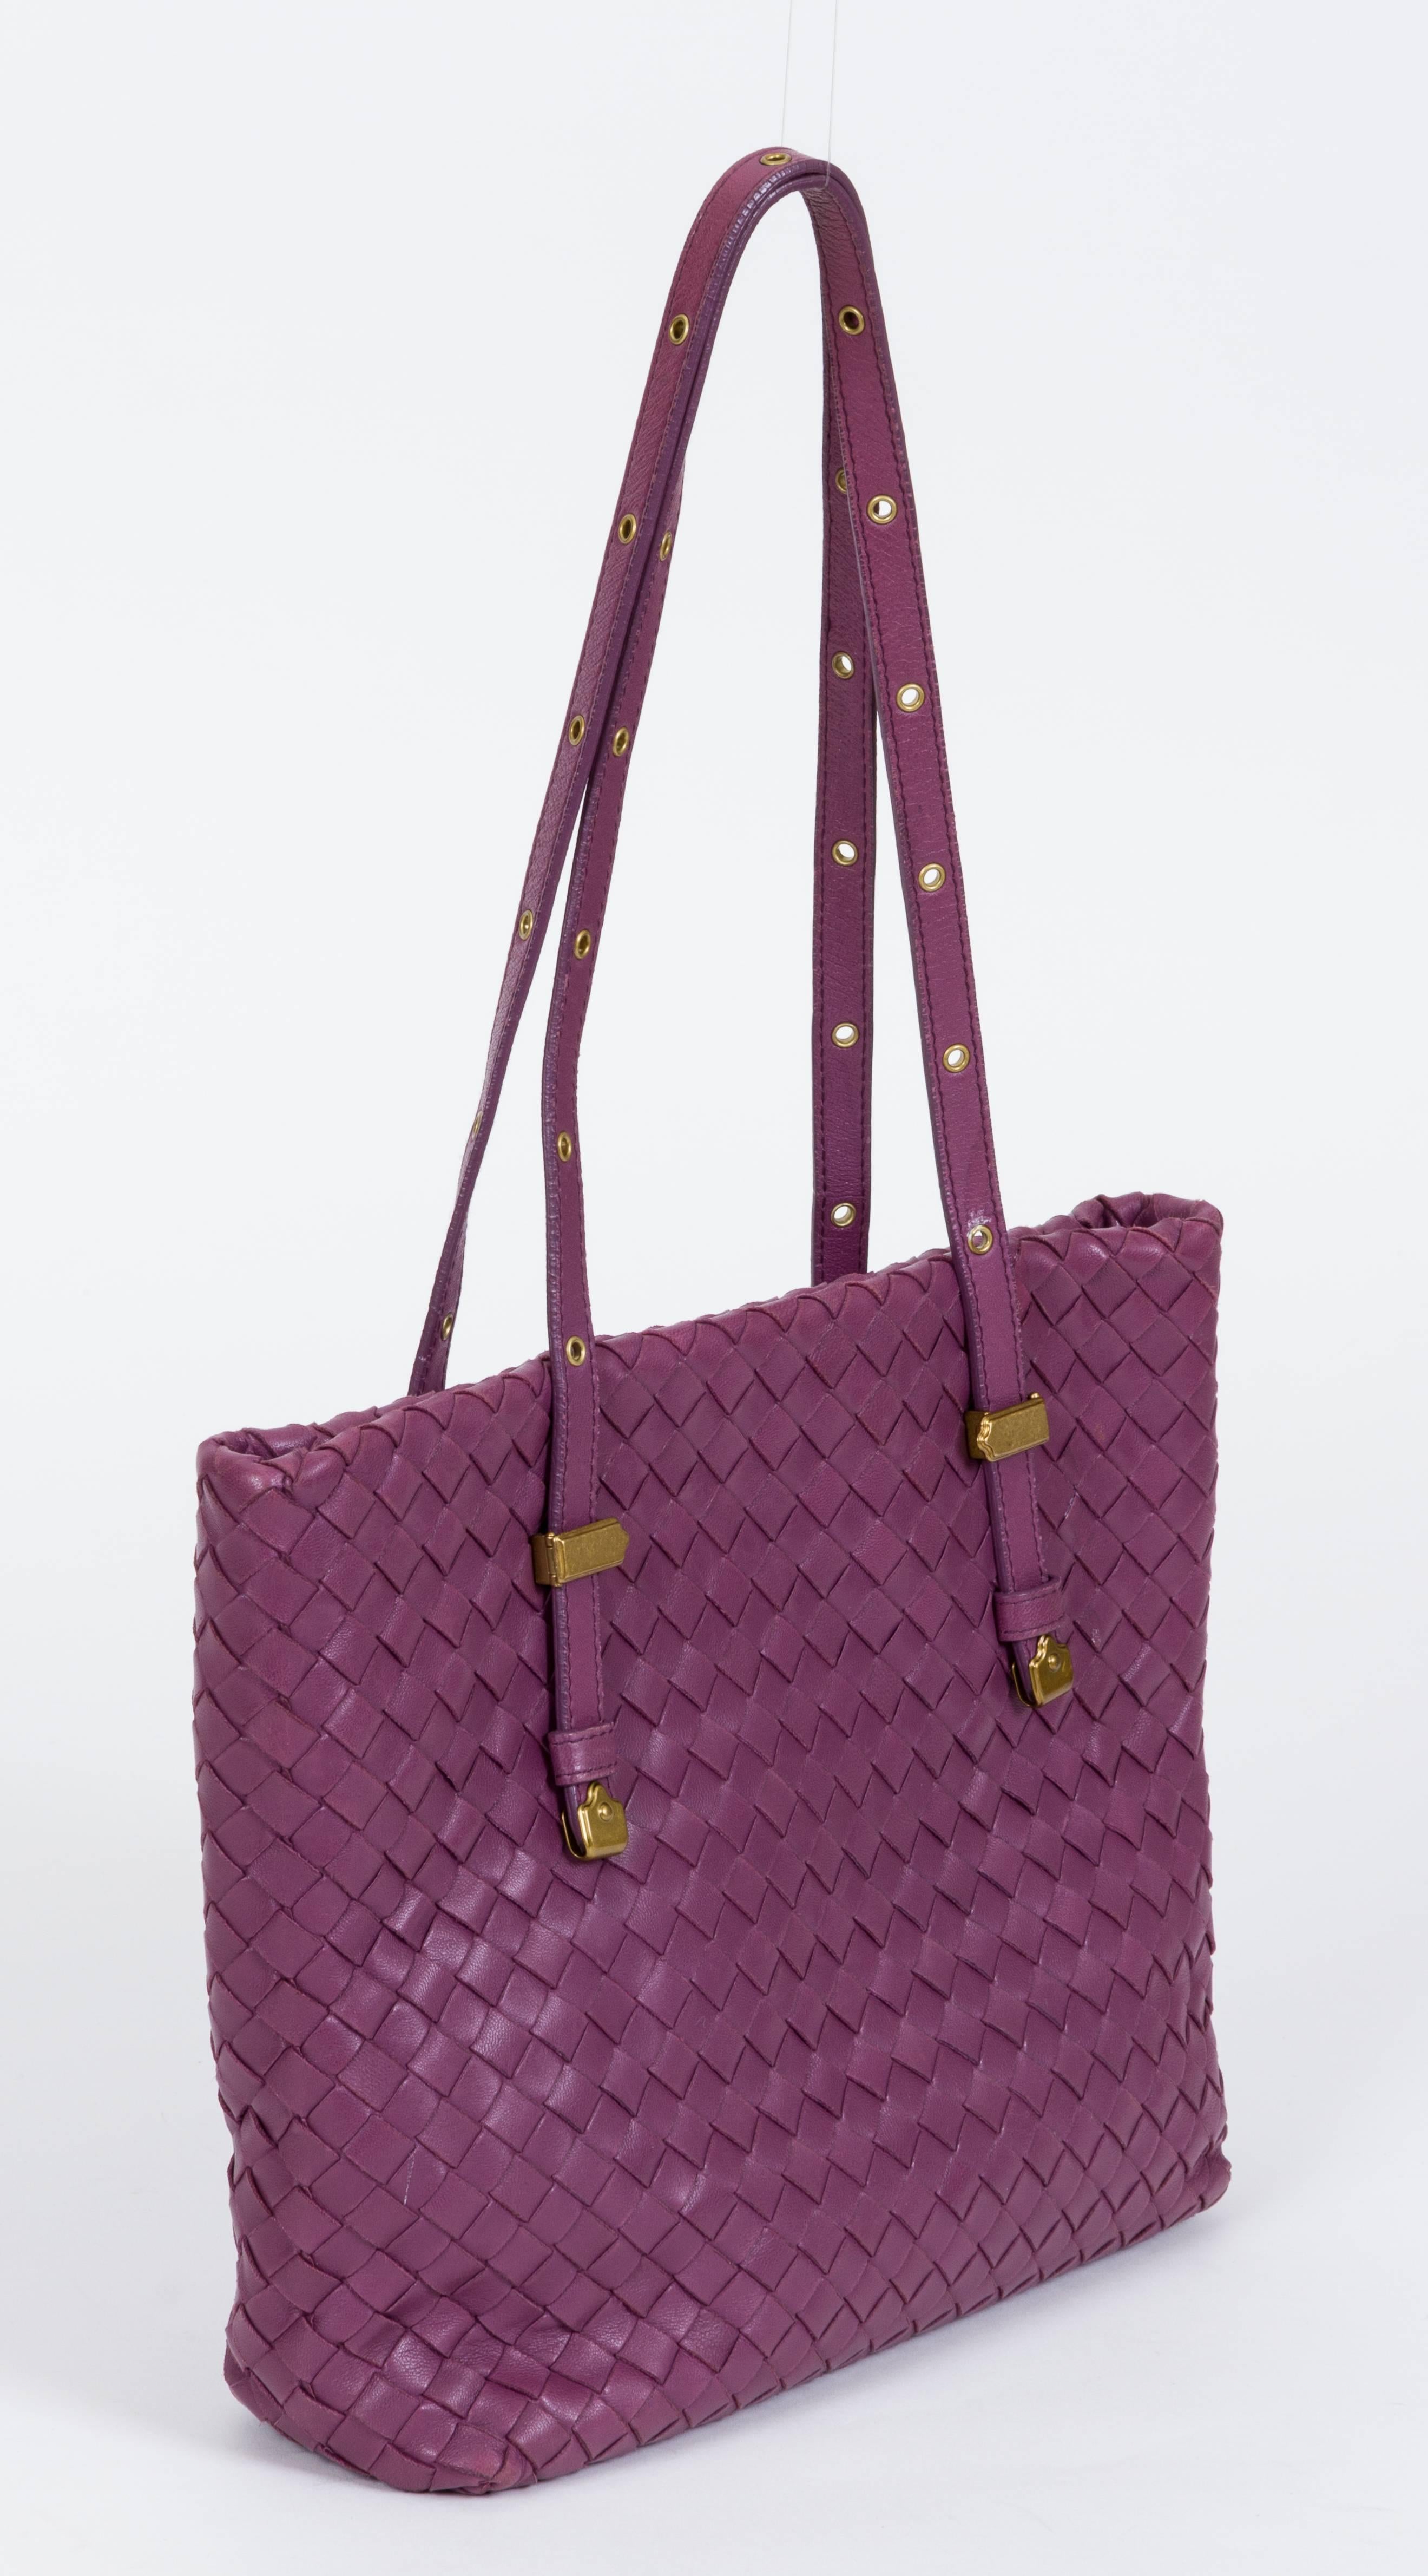 Bottega Veneta supple intrecciato leather tote in purple color with brass hardware. Measurements: 9.5